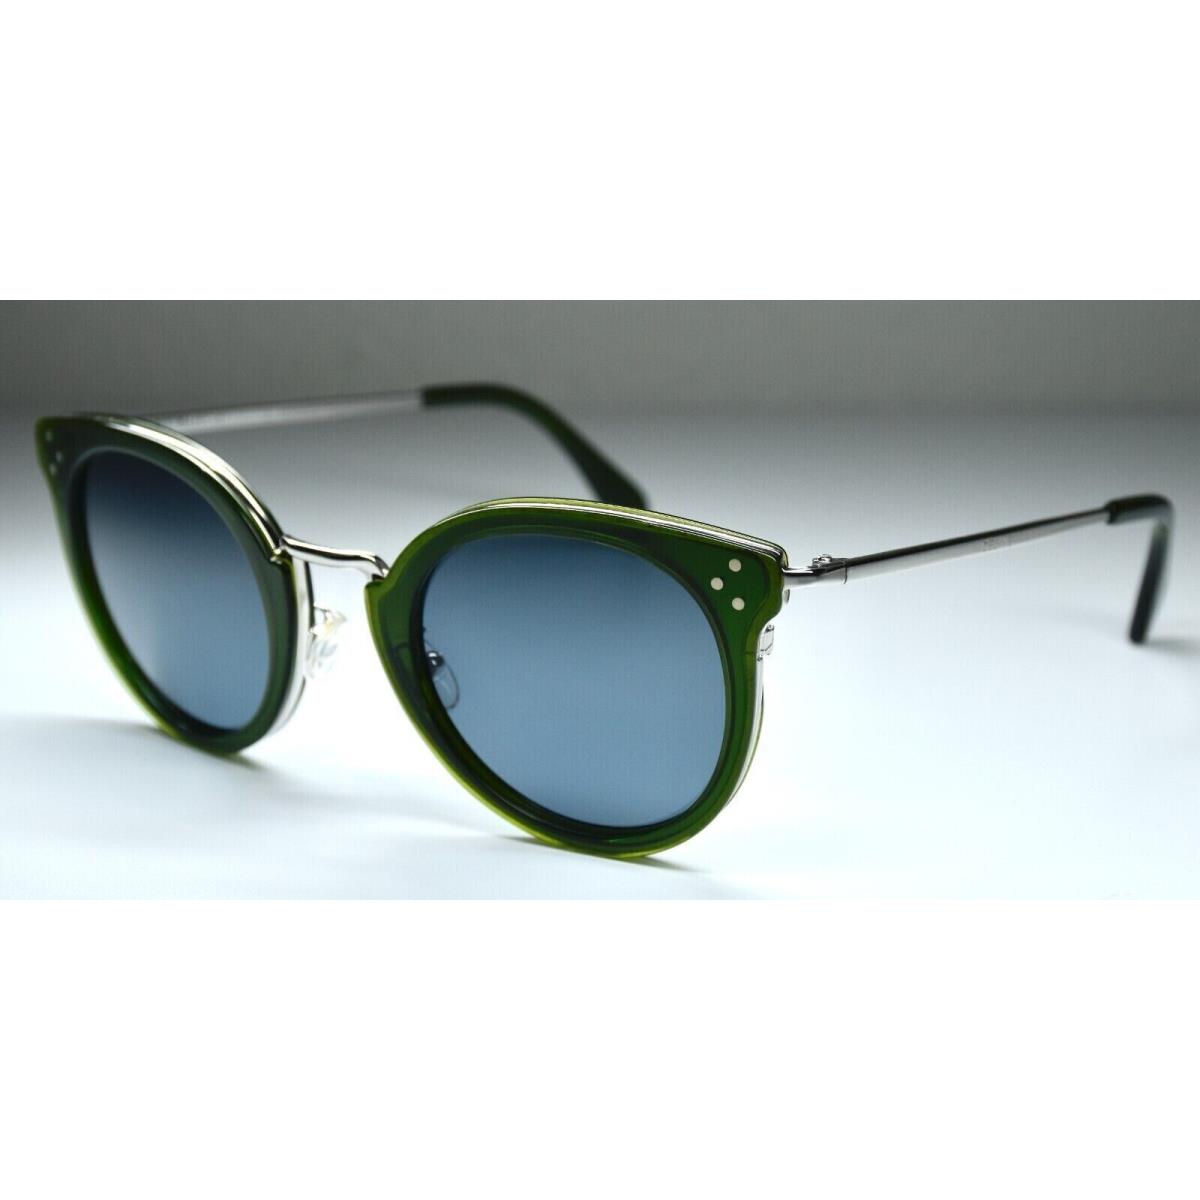 Celine sunglasses  - Green/Silver Frame, Blue Lens 3